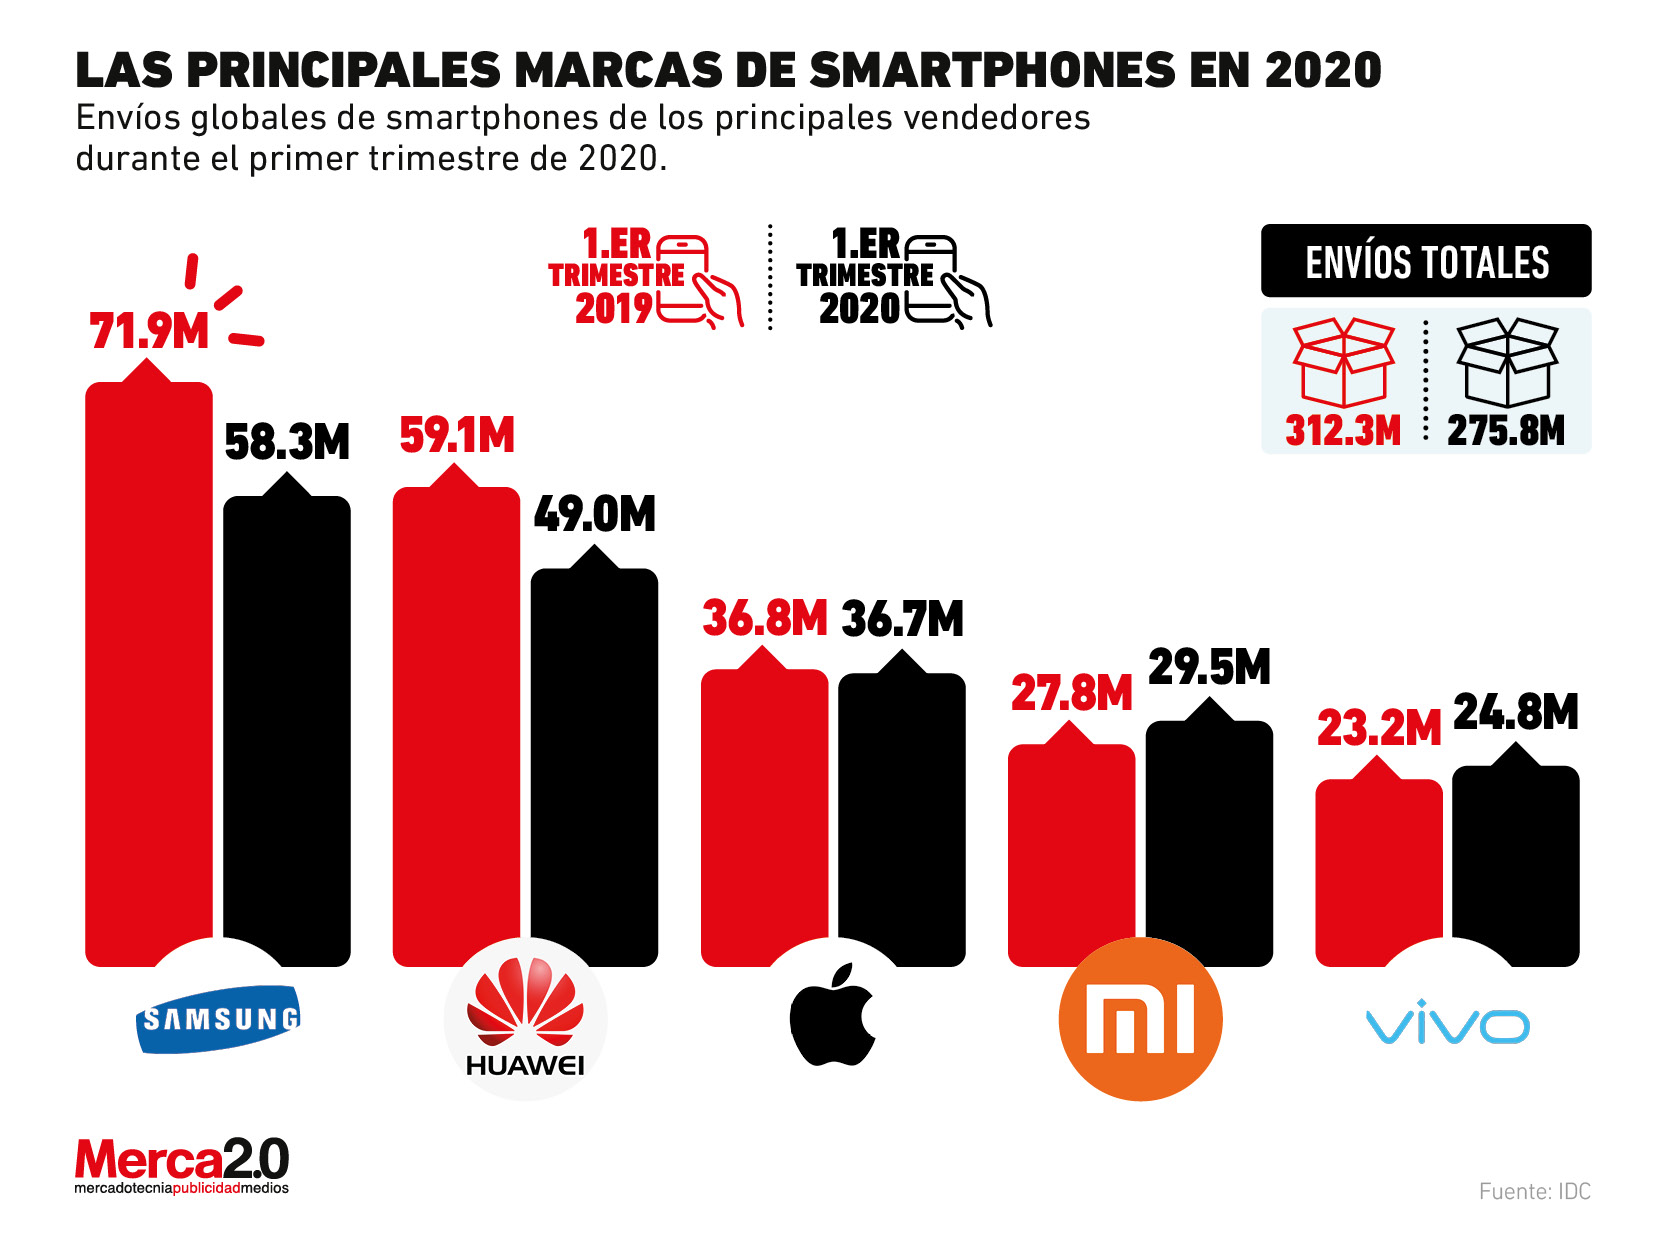 Estas son las principales marcas de smartphones en 2020